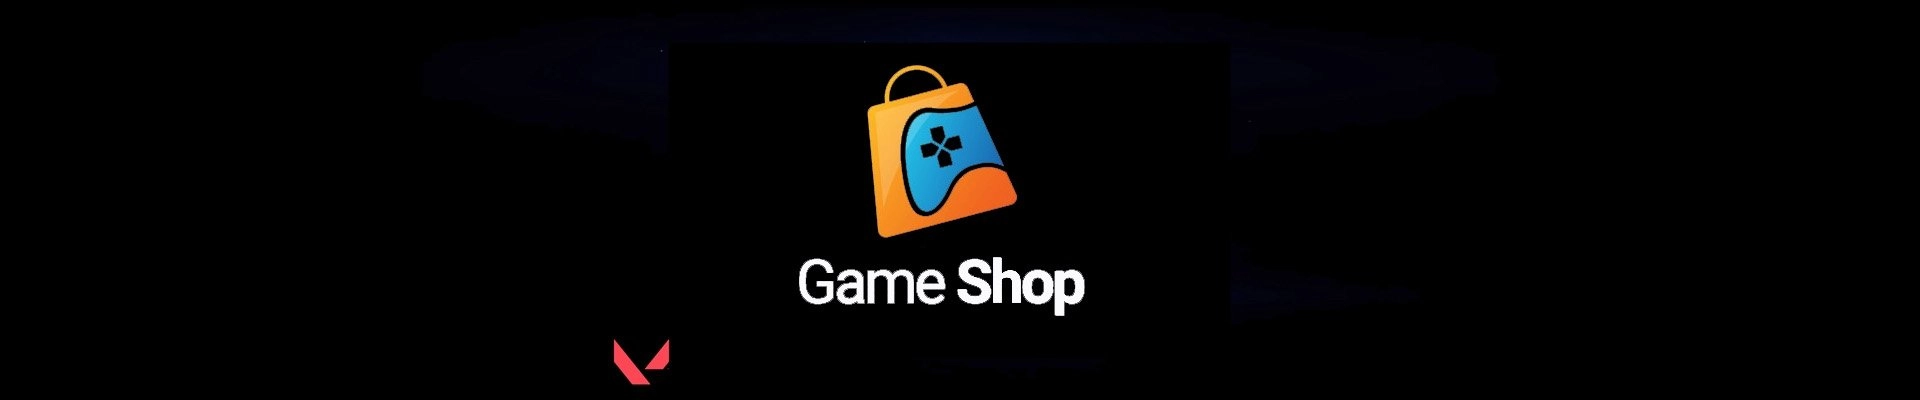 GameShop kapak fotoğrafı